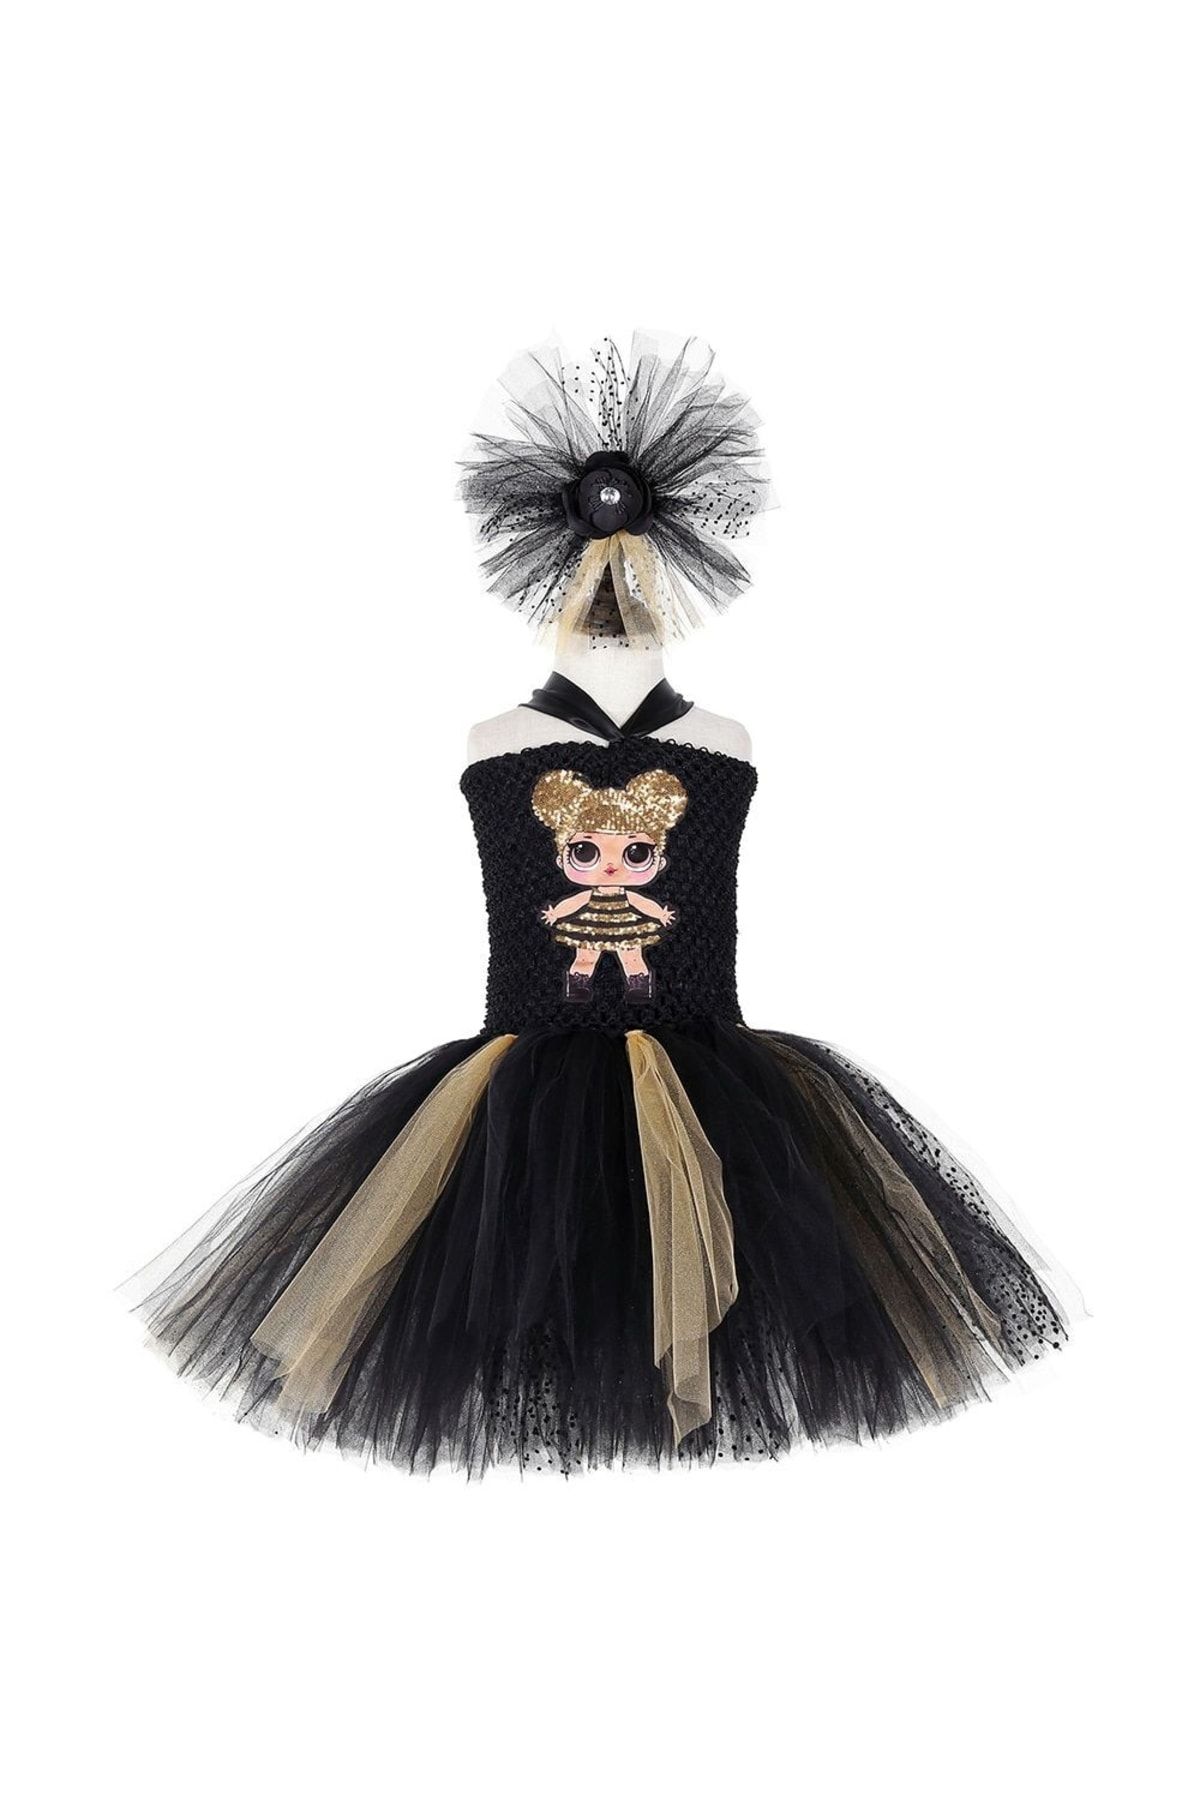 ELALEL TASARIM Lol Bebek Kostüm Kız Çocuklar Için Siyah Tütü Elbise.kabarık Tütü Etek Tac Hediyeli Lol Tütü Elbıse